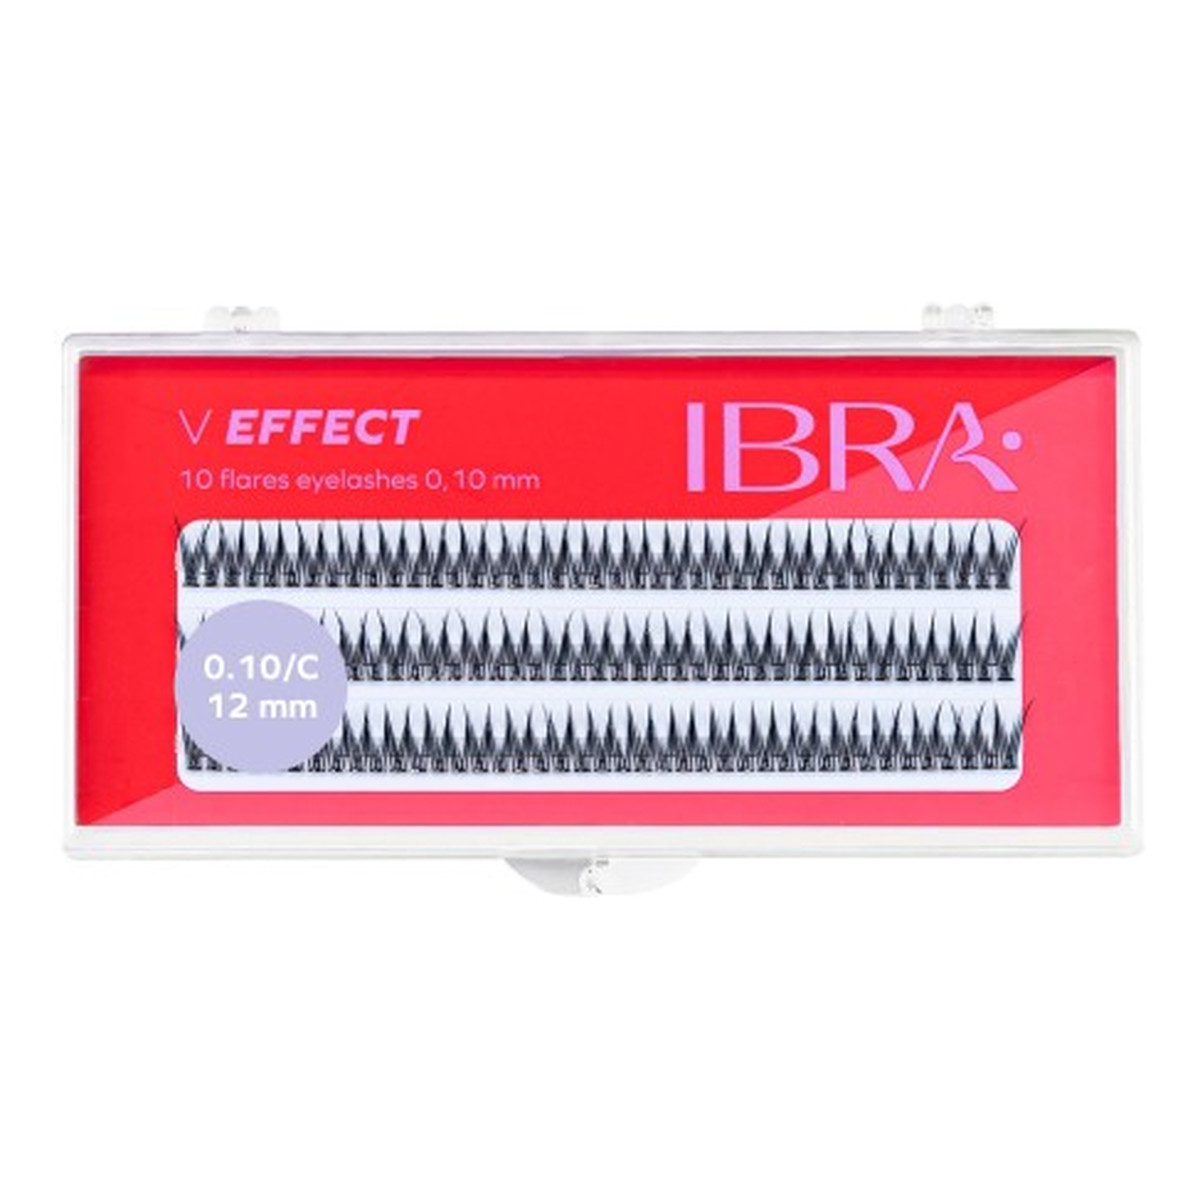 Ibra V Effect Sztuczne rzęsy kępki C0.10 12mm